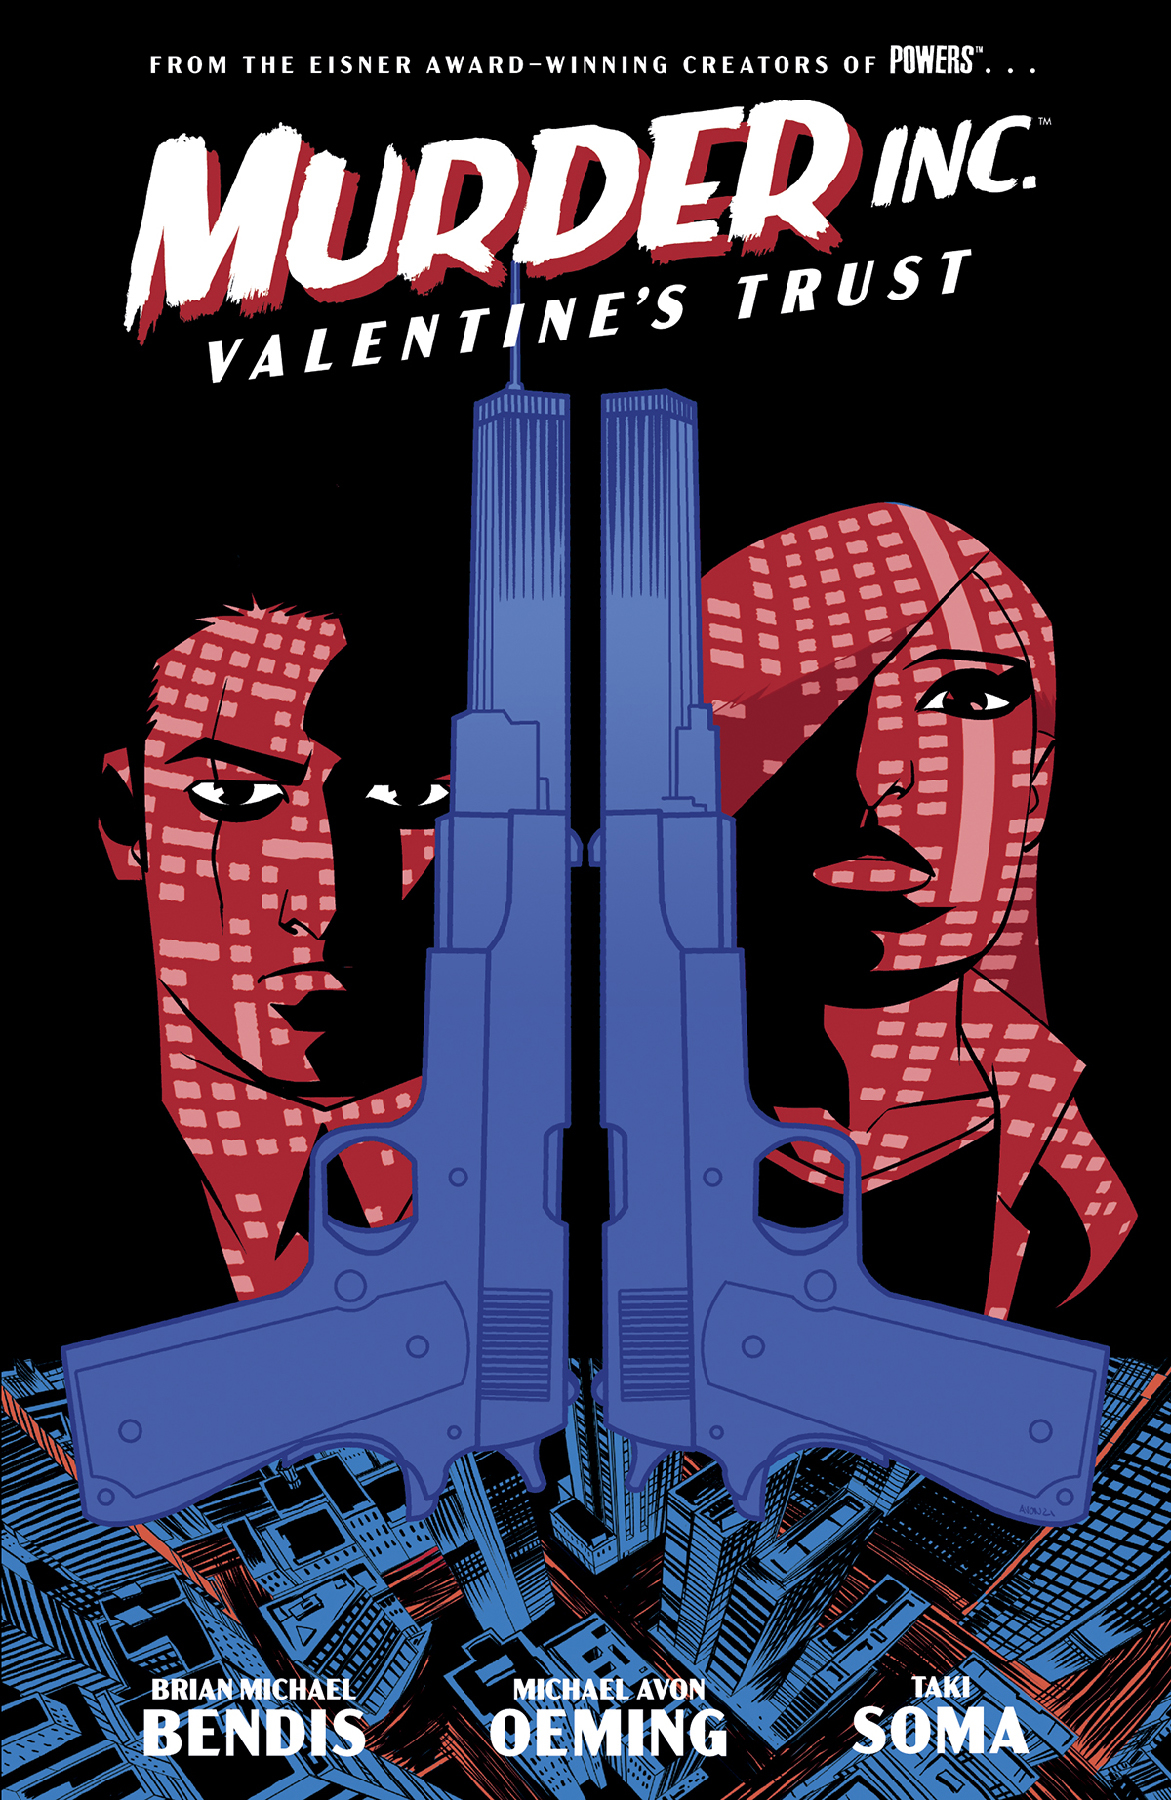 Murder Inc Graphic Novel Volume 1 Valentines Trust